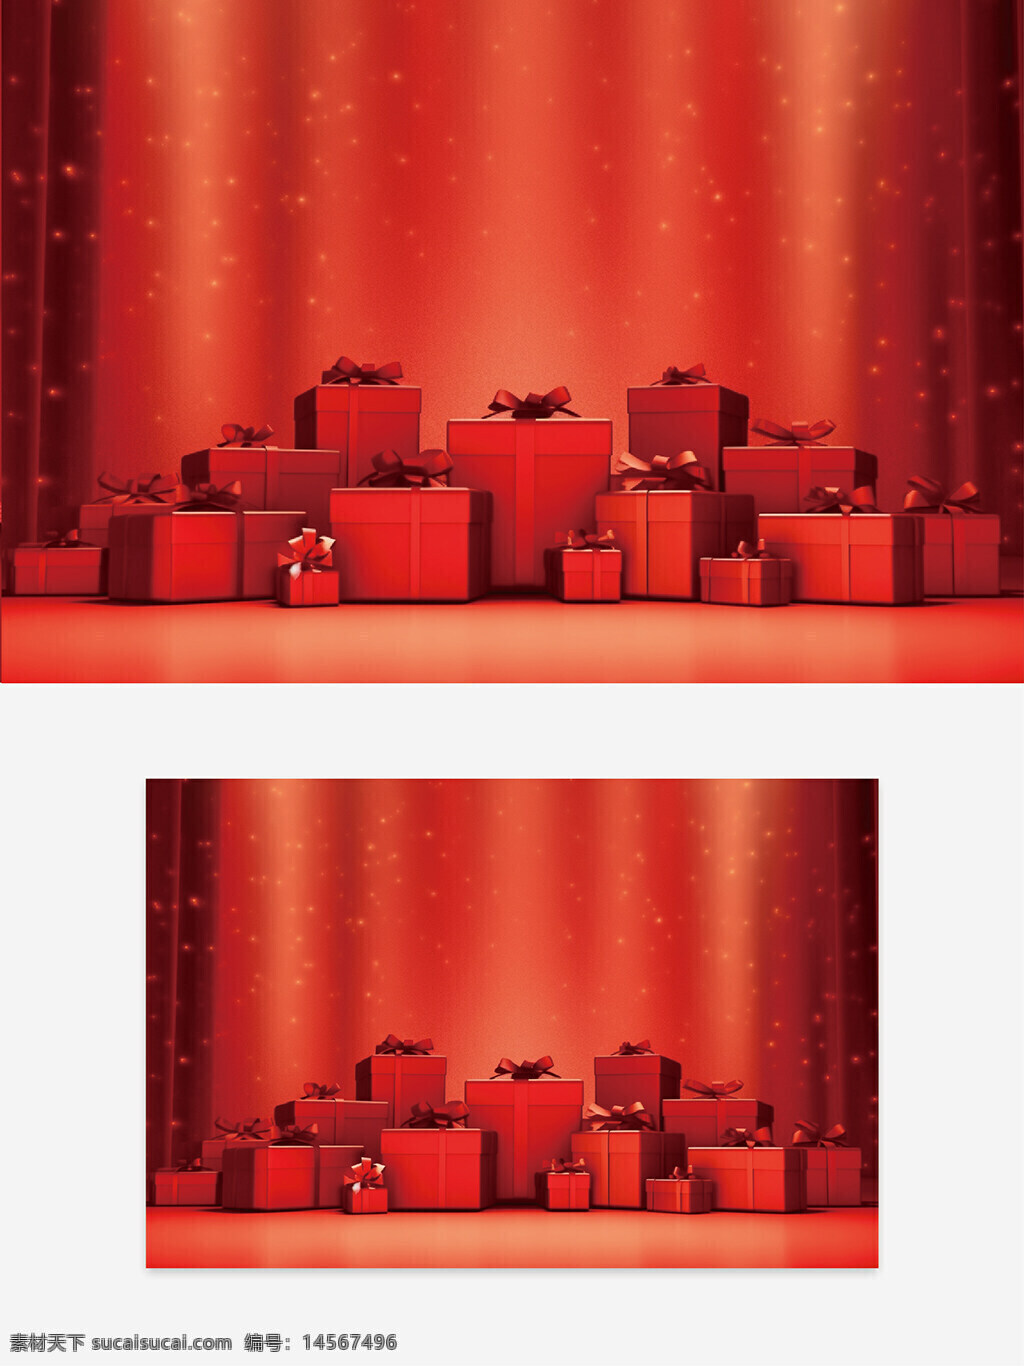 创意礼物背景 红色背景 舞台背景 舞台设计 广告创意 创意礼物